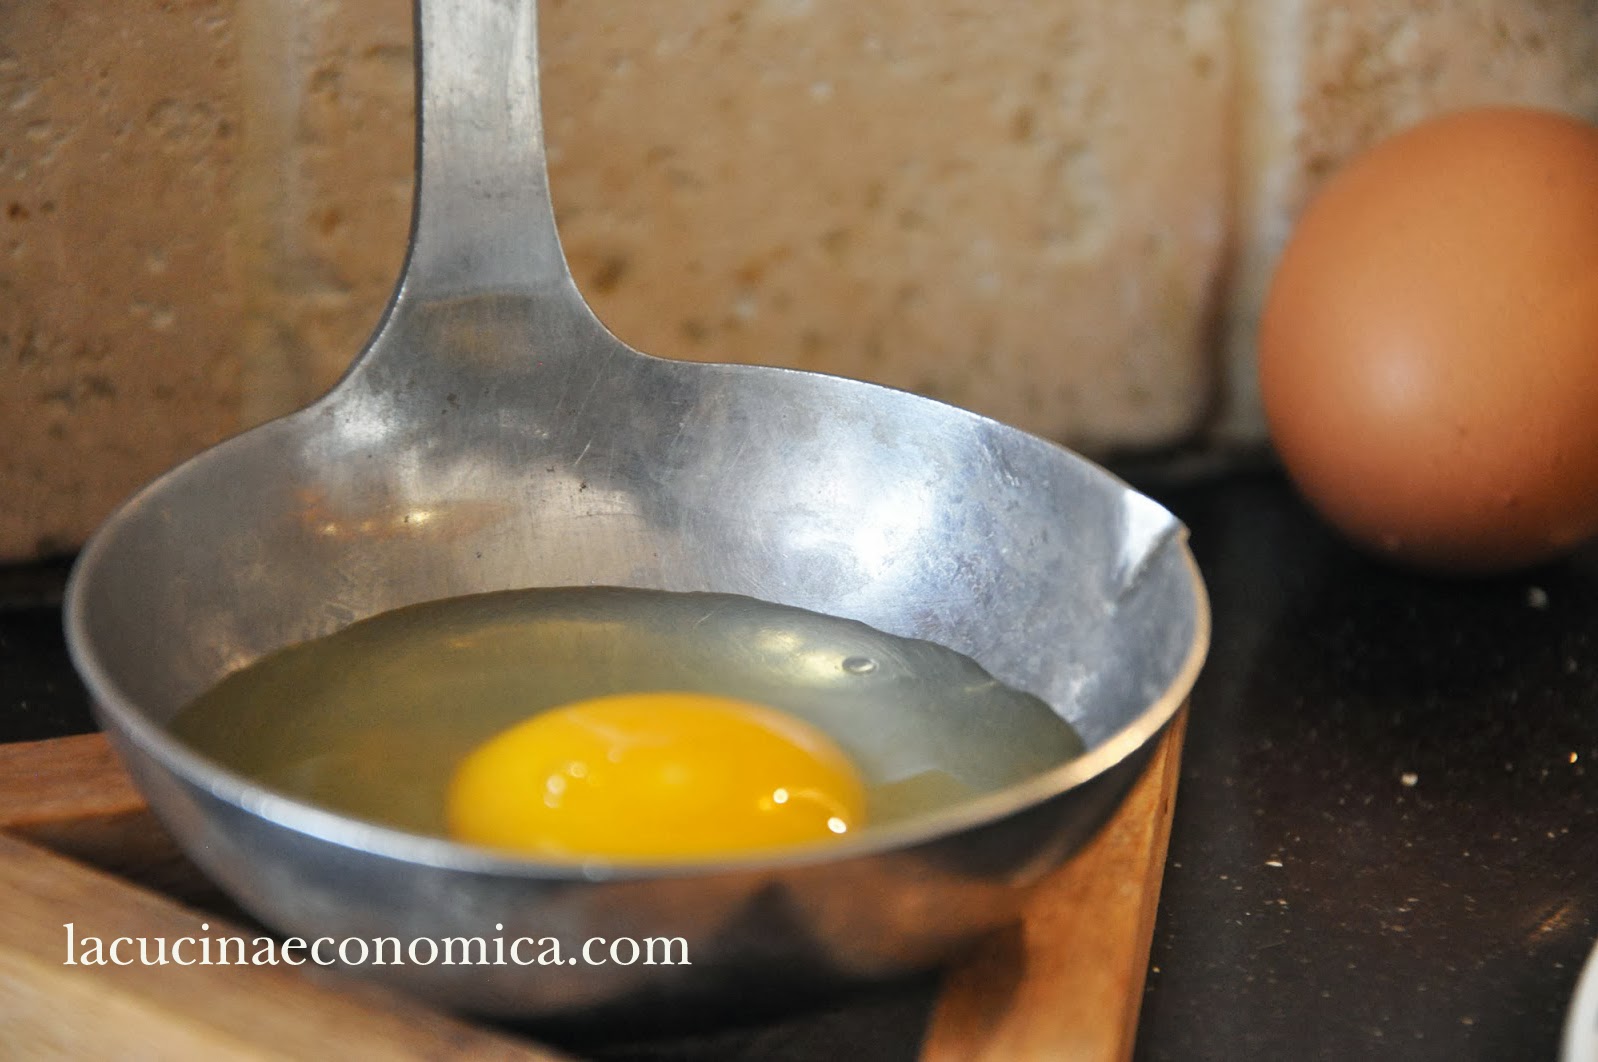 La Cucina Economica: L'uovo in camicia perfetto? Ecco come fare